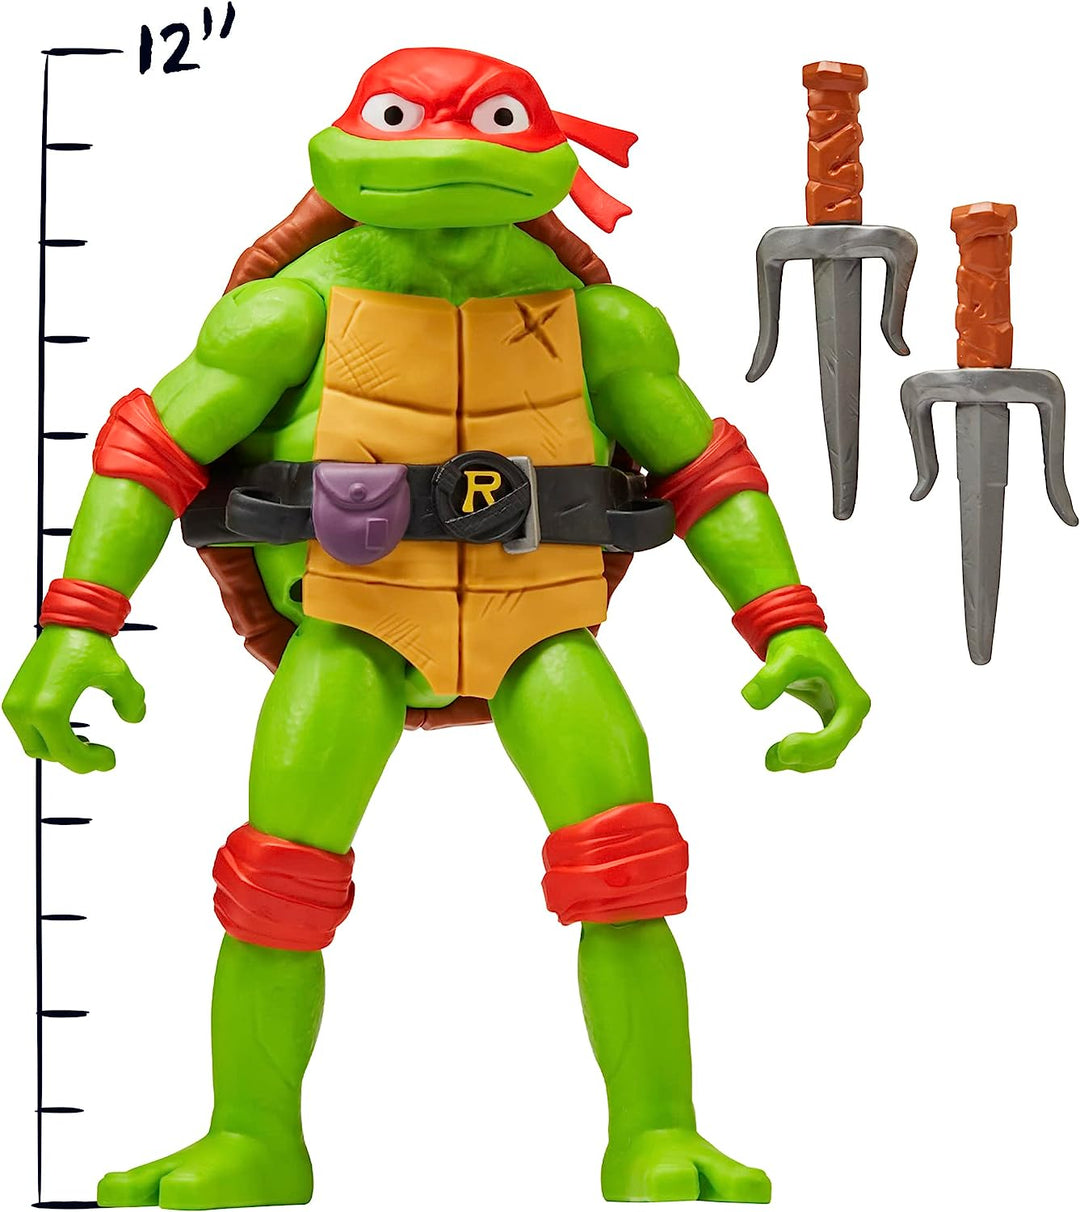 Teenage Mutant Ninja Turtles 83404CO Mutant Mayhem Giant Raphael 12-Inch Action Figure